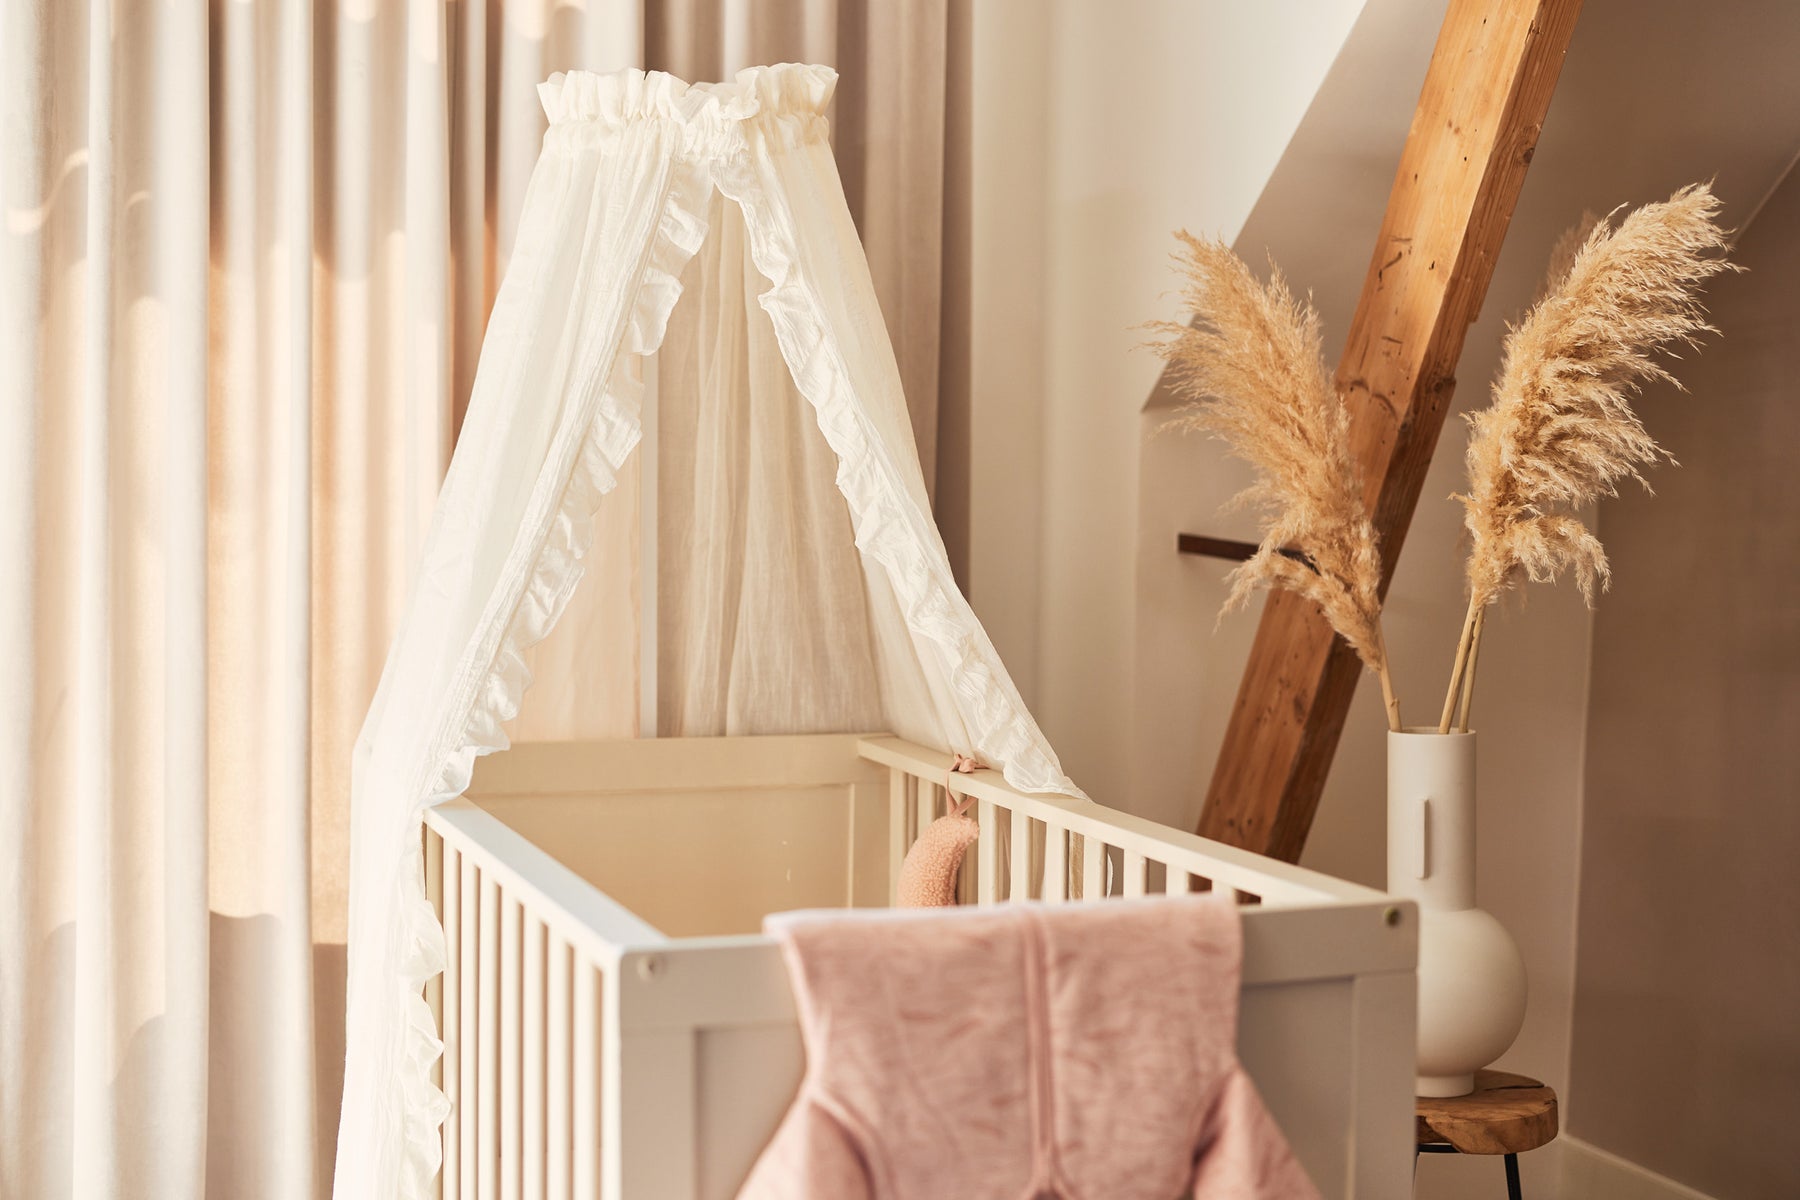 Chambre bébé : tous nos conseils pour réussir son aménagement